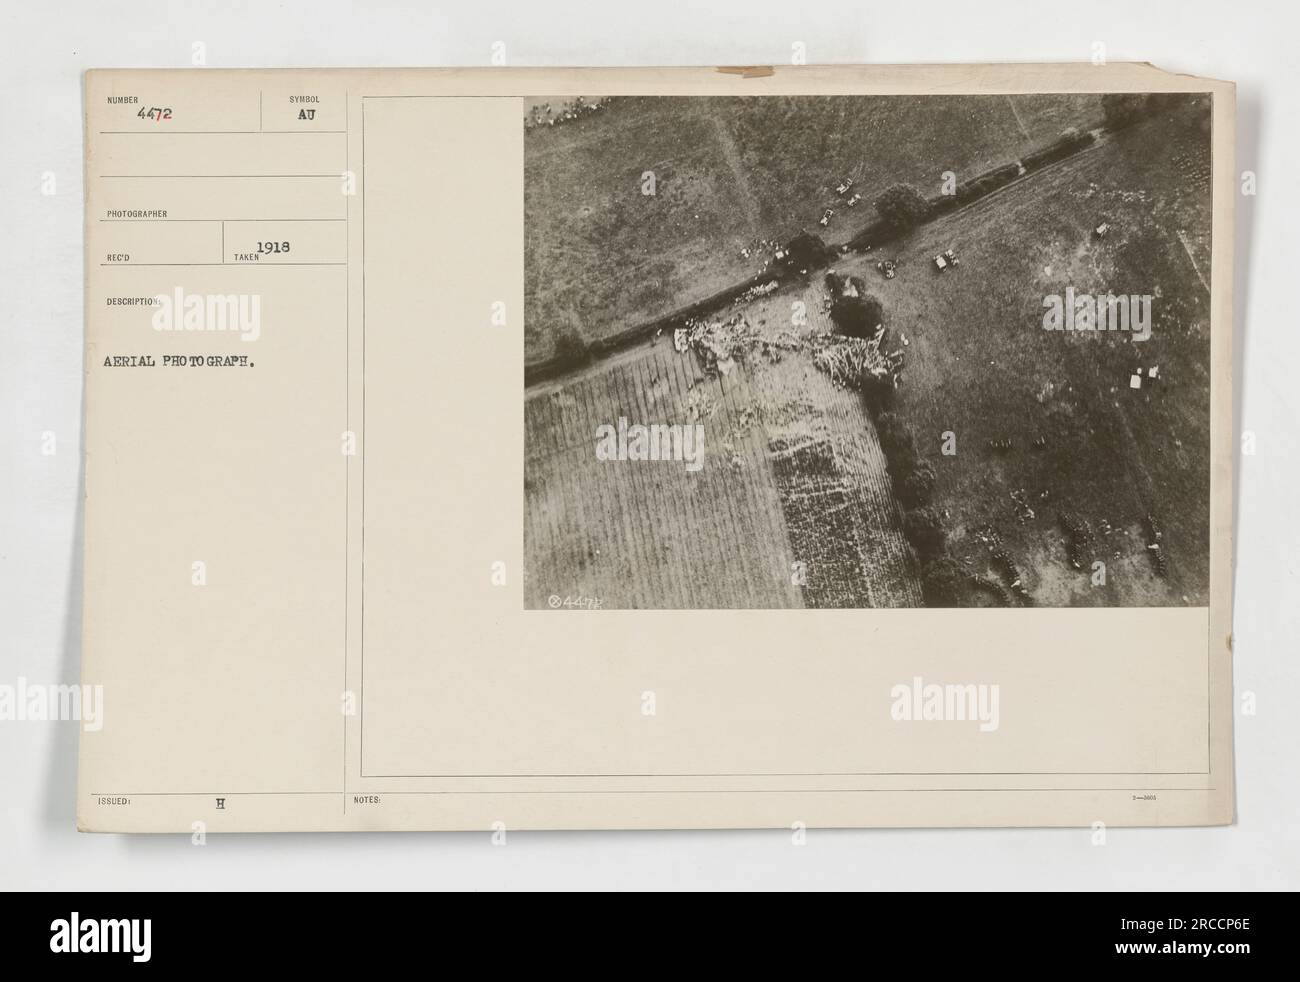 Fotografia aerea scattata nel 1918 durante la prima guerra mondiale. Il fotografo è elencato come Wunder, con la foto designata come SC-4472. Mostra una vista di Syrdol, con note aggiuntive e descrizioni relative all'immagine. Foto Stock